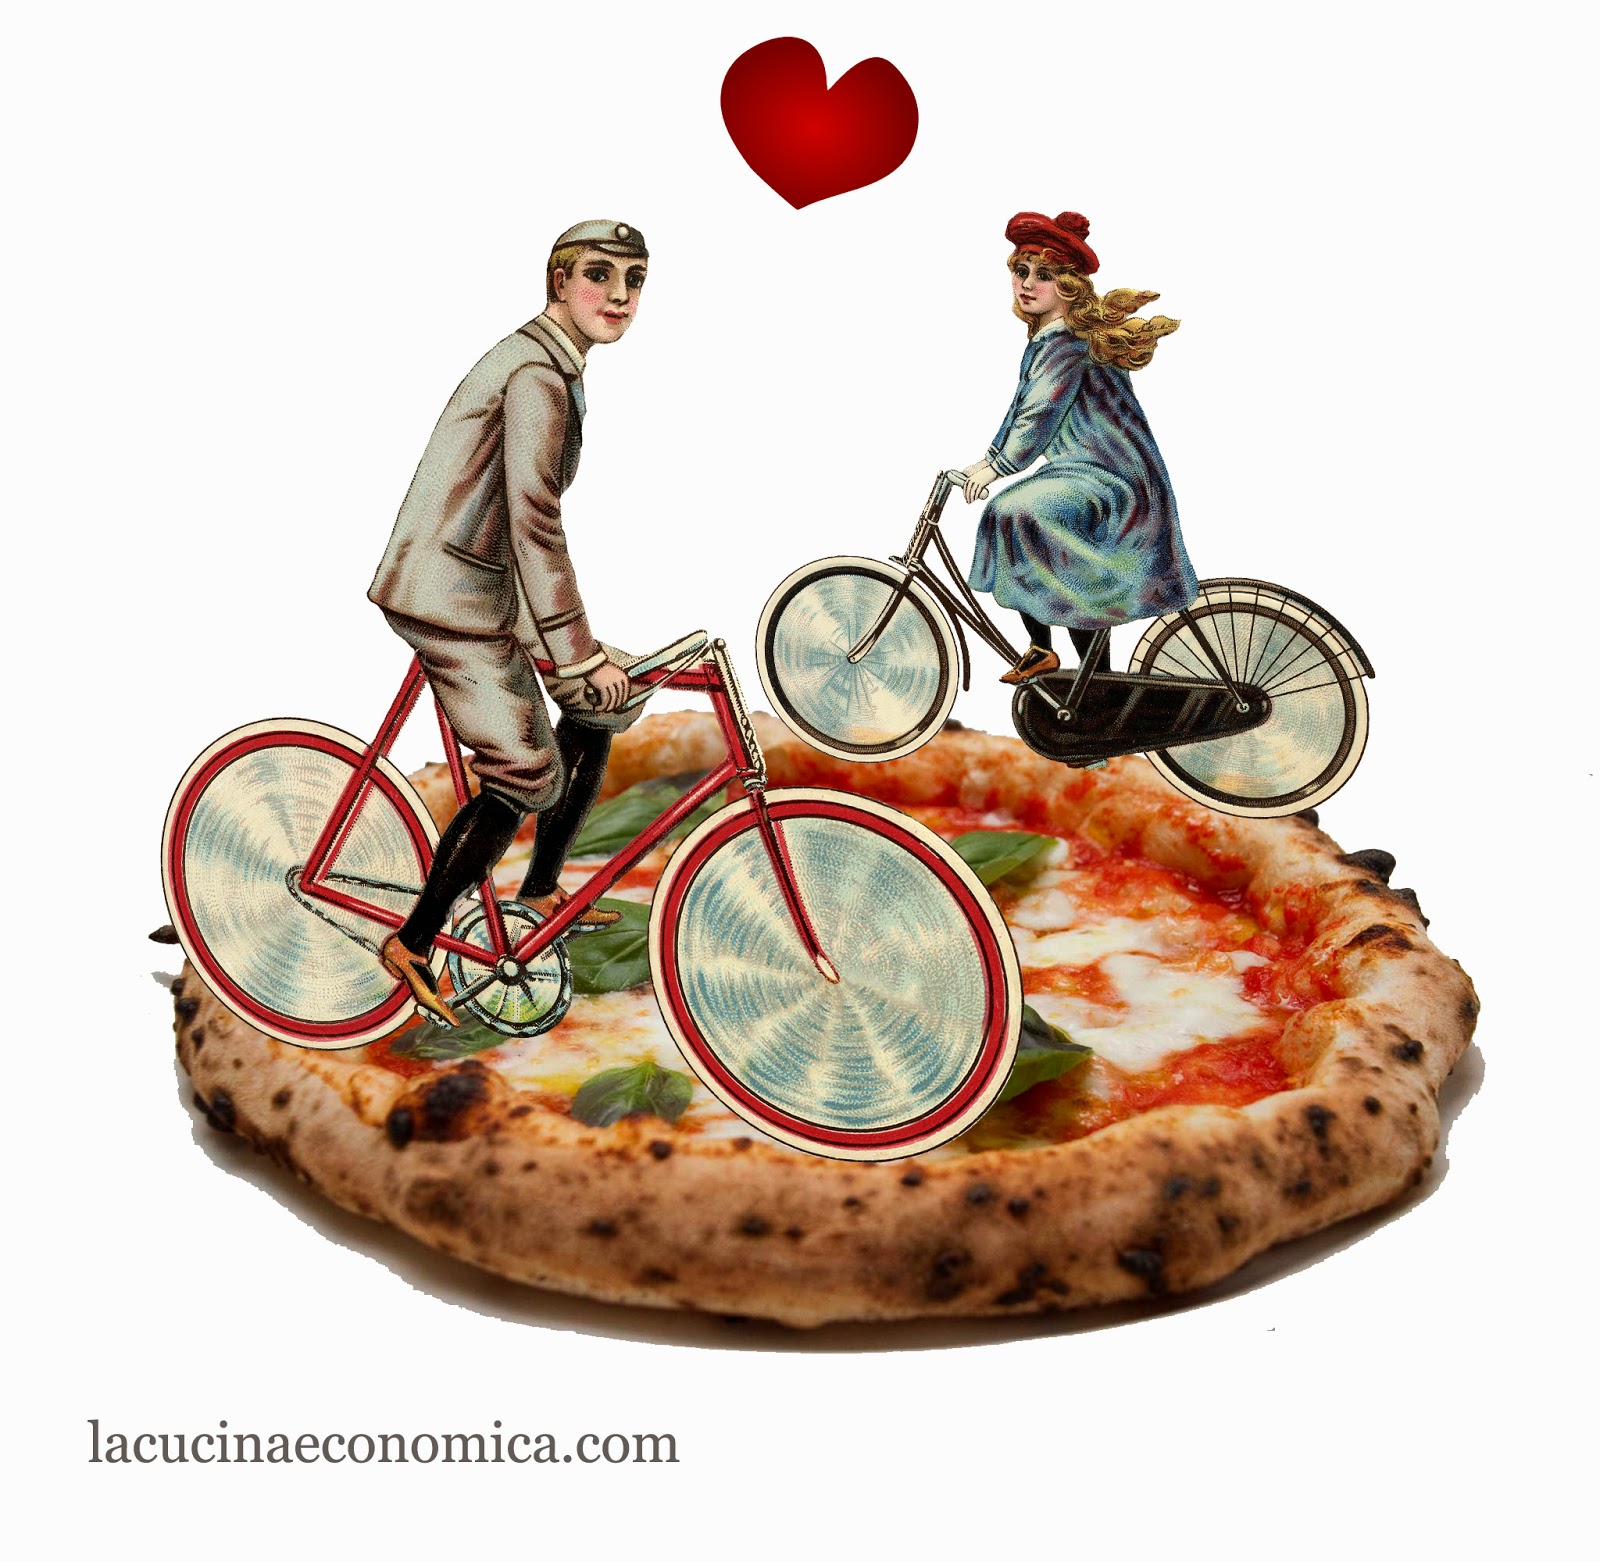 come fare l'impasto per la pizza napoletana